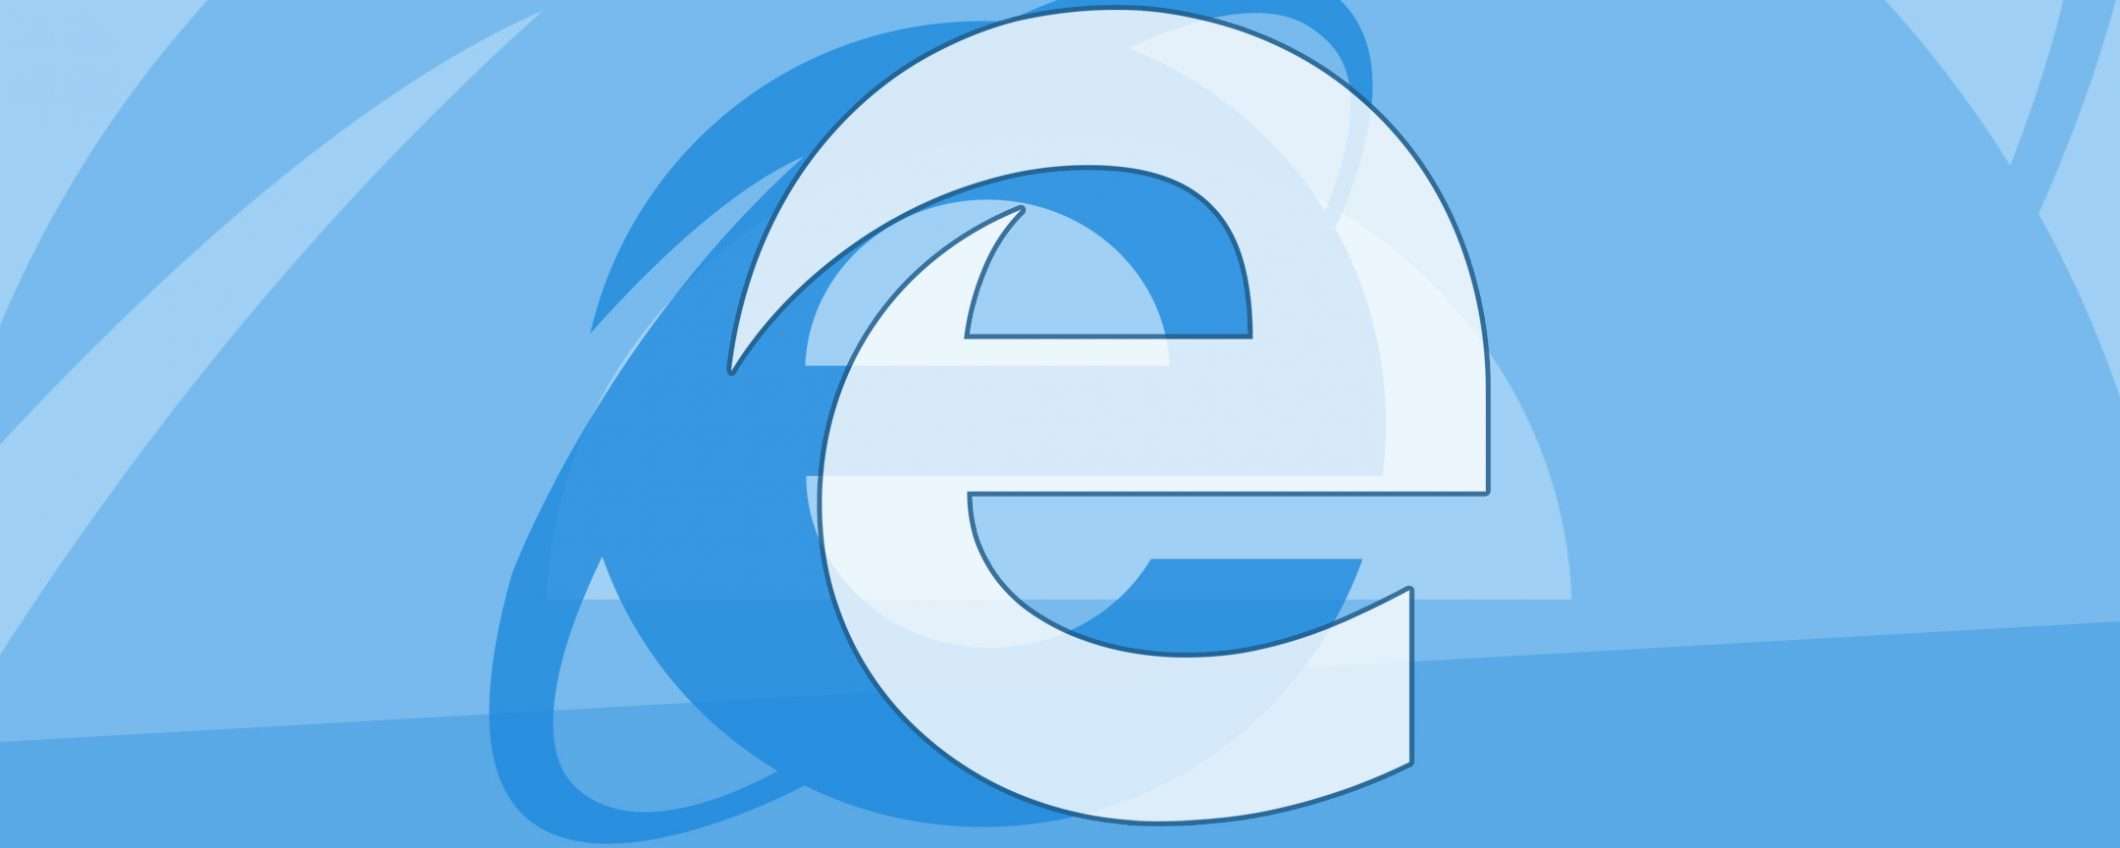 Internet Explorer e il redirect automatico in Edge